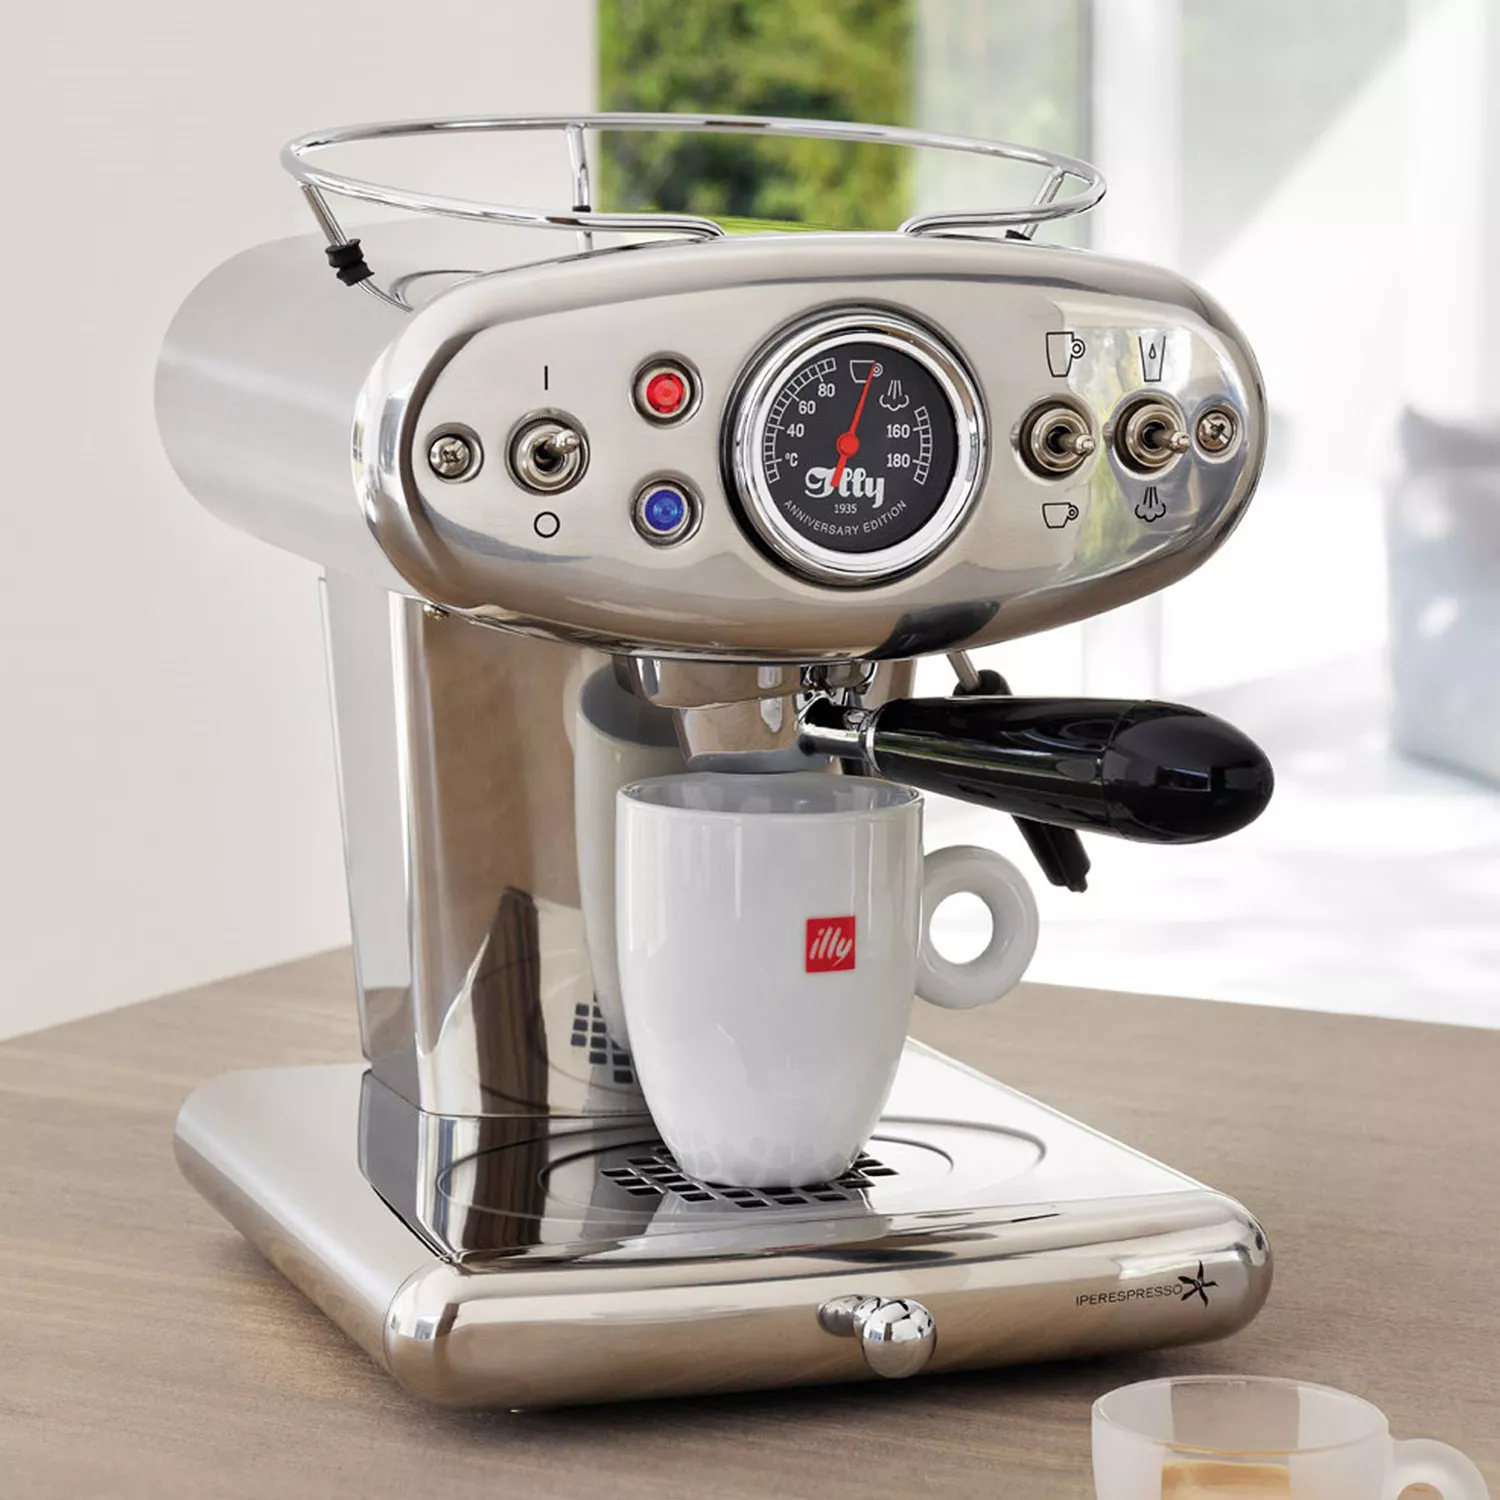 X1 Anniversary E.S.E. Pod & Ground Coffee Machine